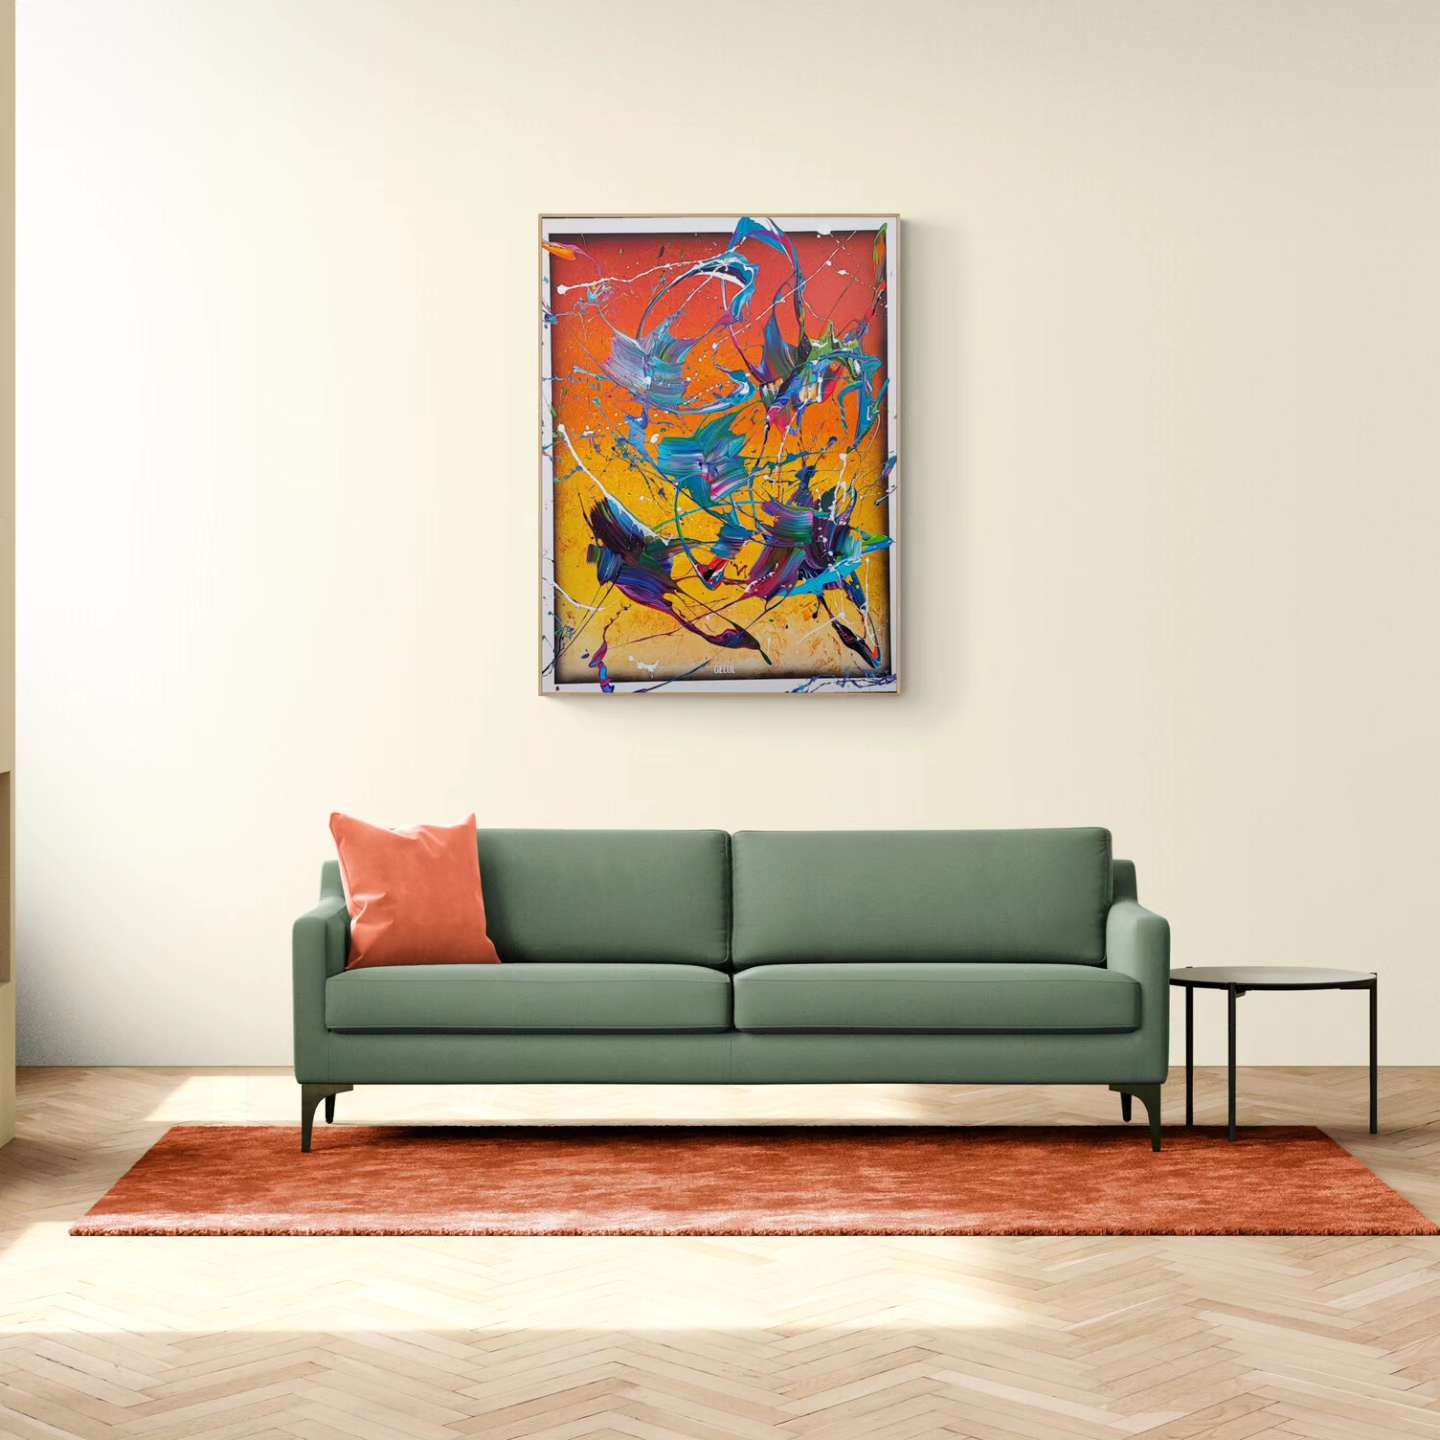 Tropical Storm - 89x116cm - Tableau abstrait moderne coloré